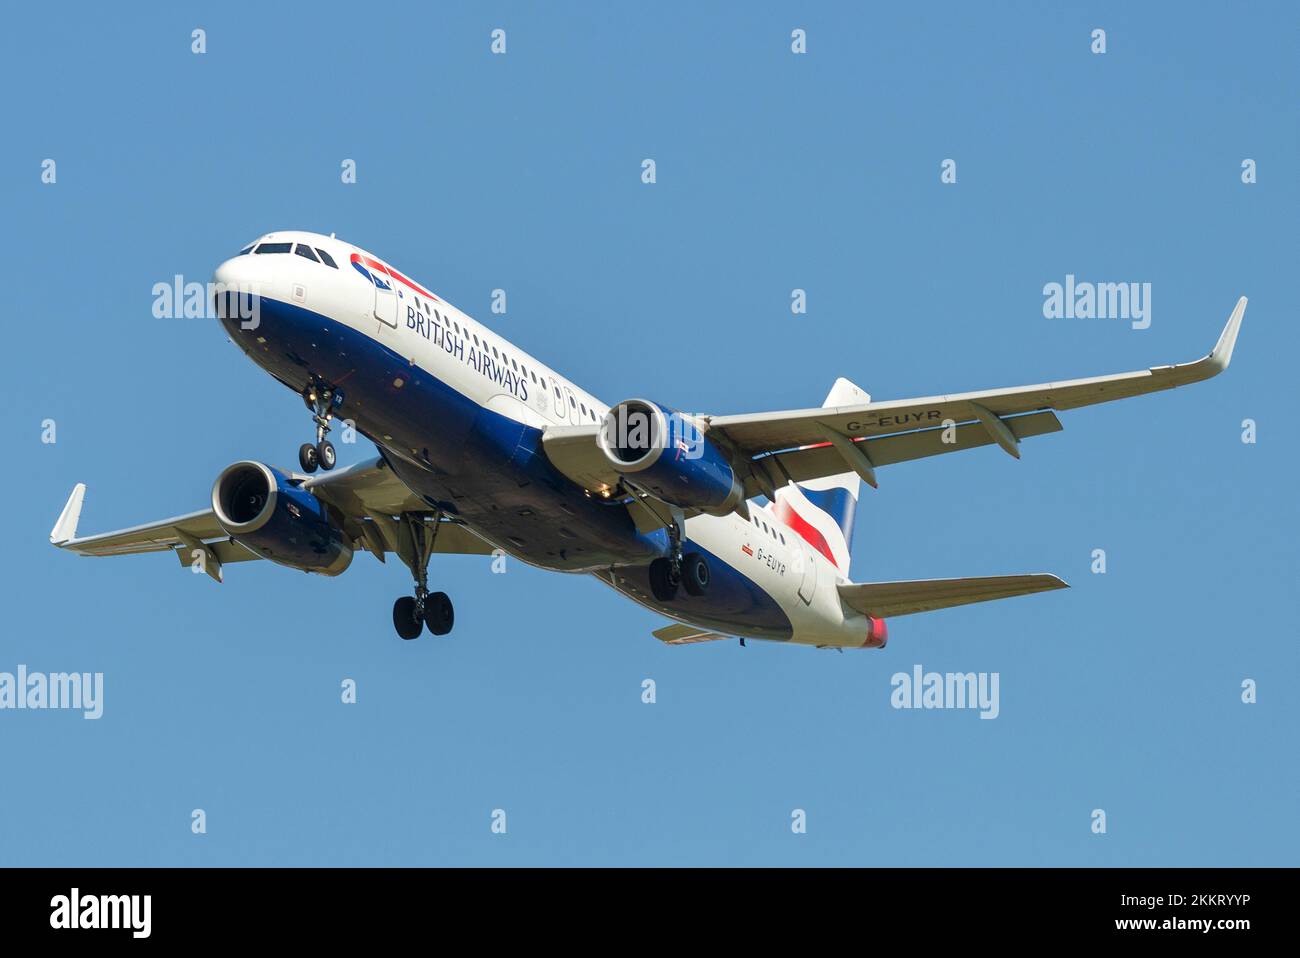 SAINT-PÉTERSBOURG, RUSSIE - 13 MAI 2019 : British Airways Airbus A320-232 (G-EUYR) sur une trajectoire de glisse contre un ciel bleu sans nuages Banque D'Images